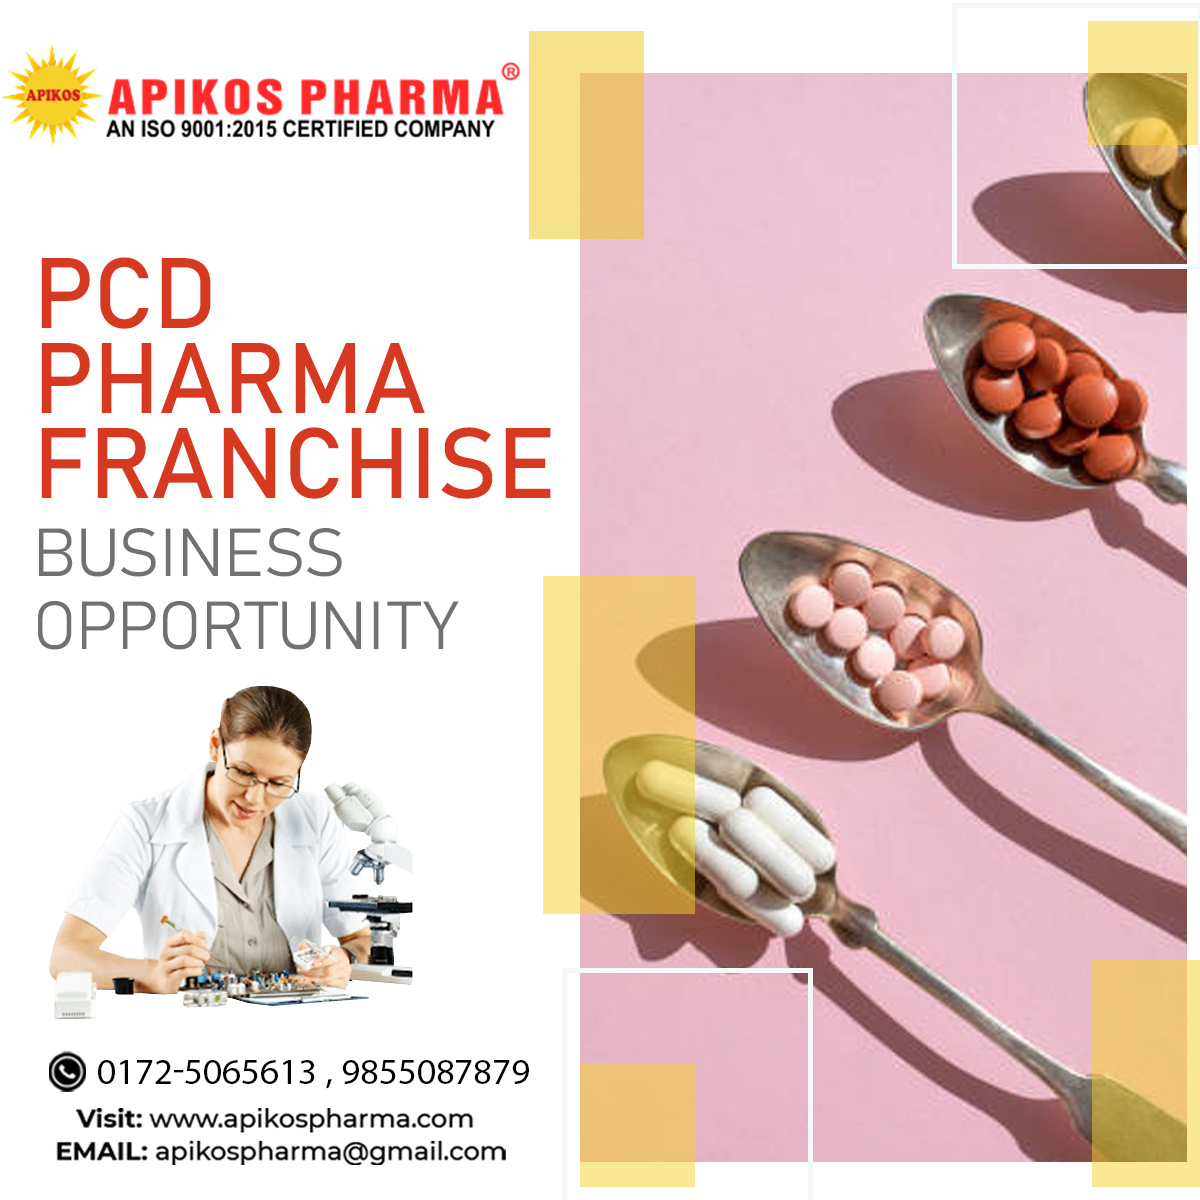 PCD Pharma Franchise in Kozhikode